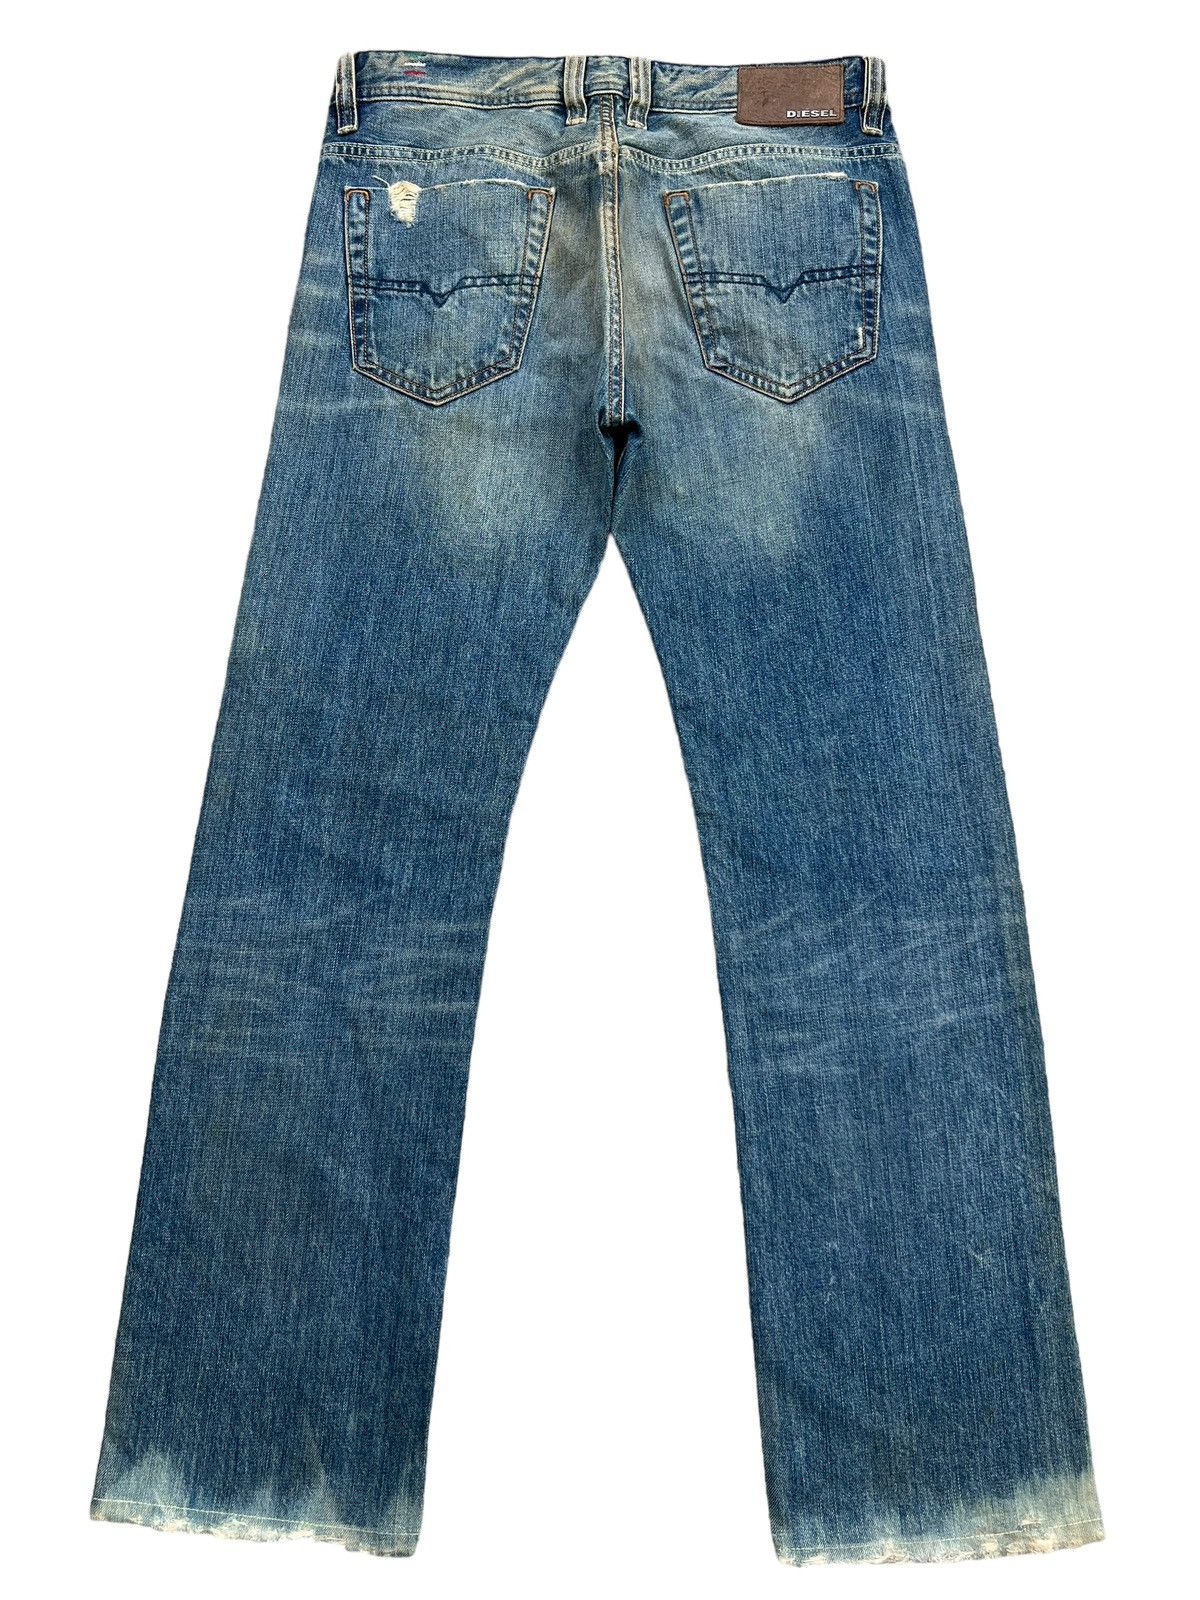 Diesel Mudwash Distressed Straightcut Denim Jeans 33x32 - 3